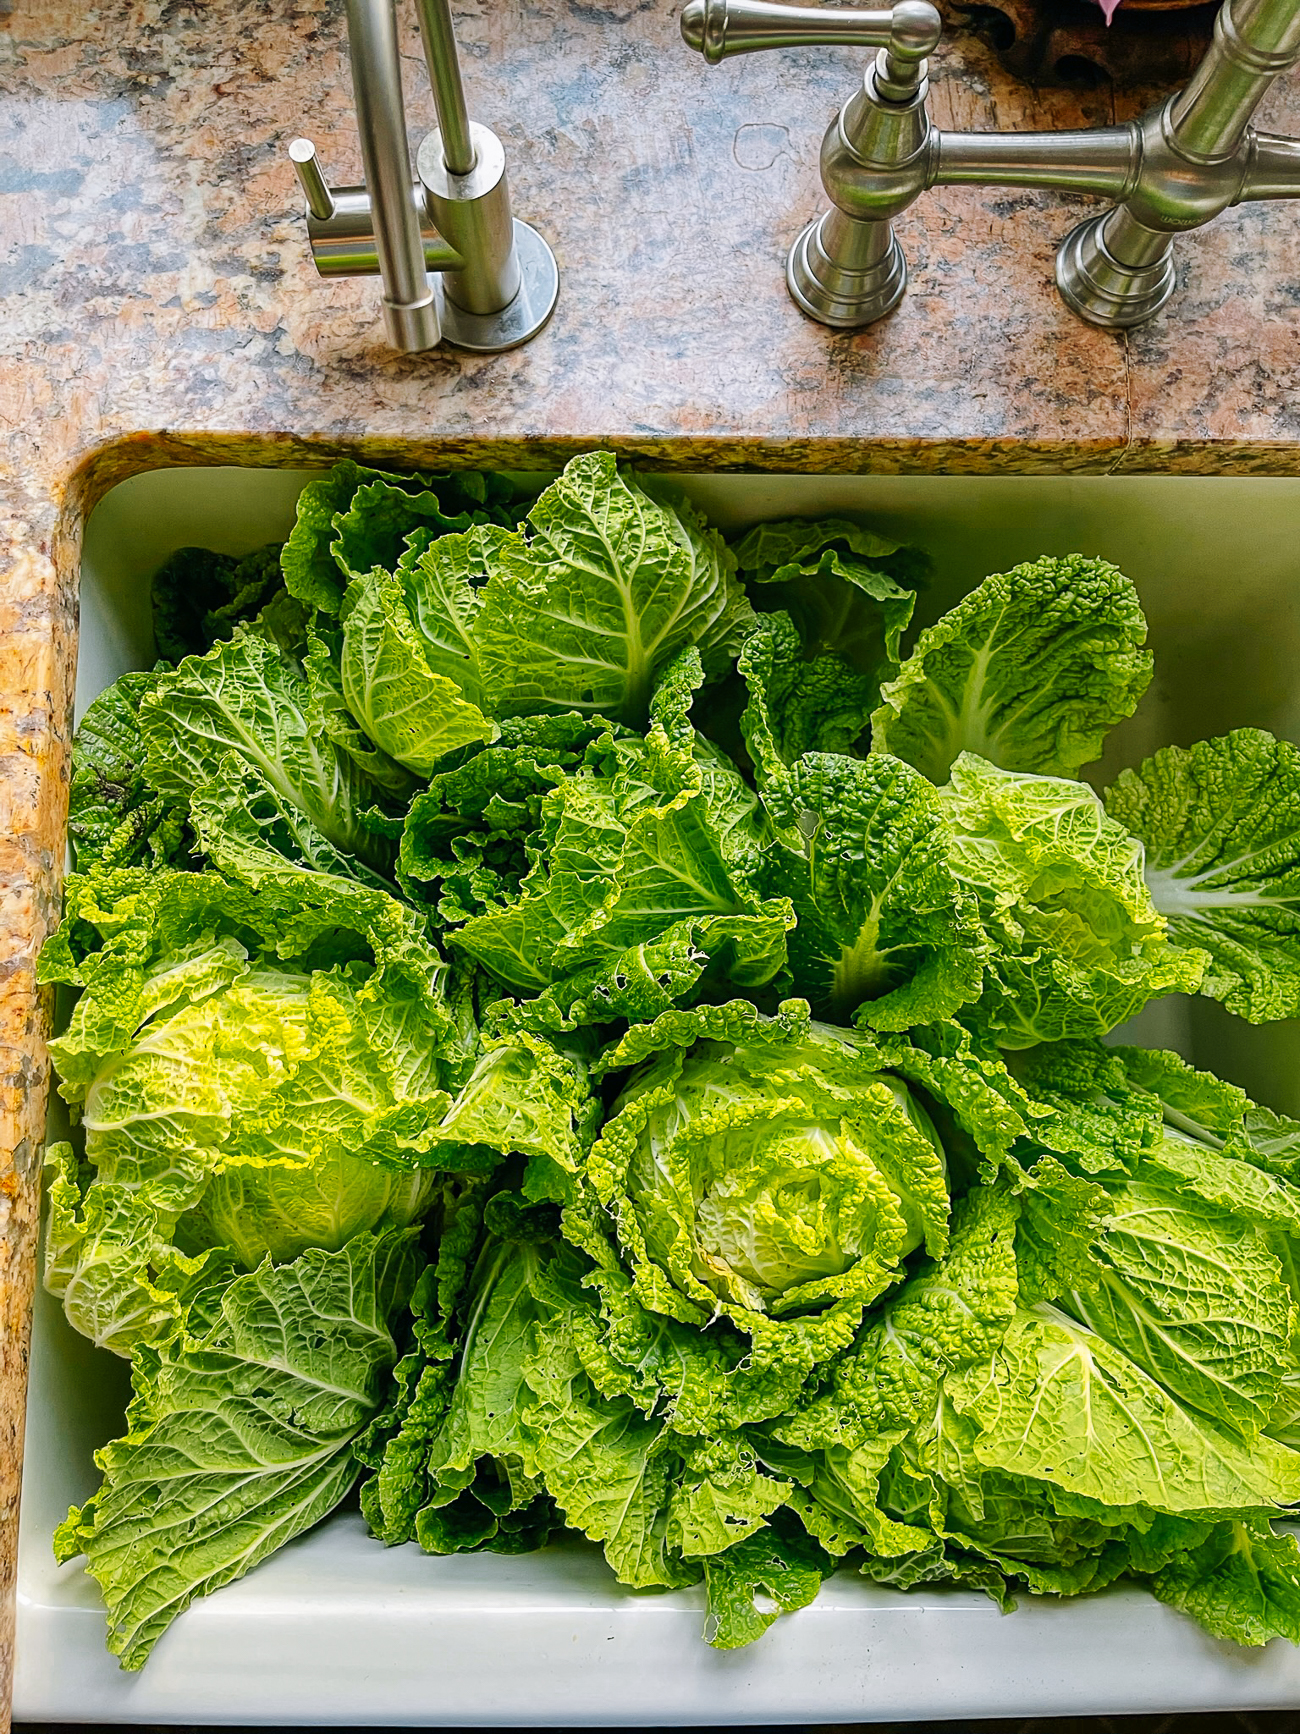 garden grown napa cabbage in sink